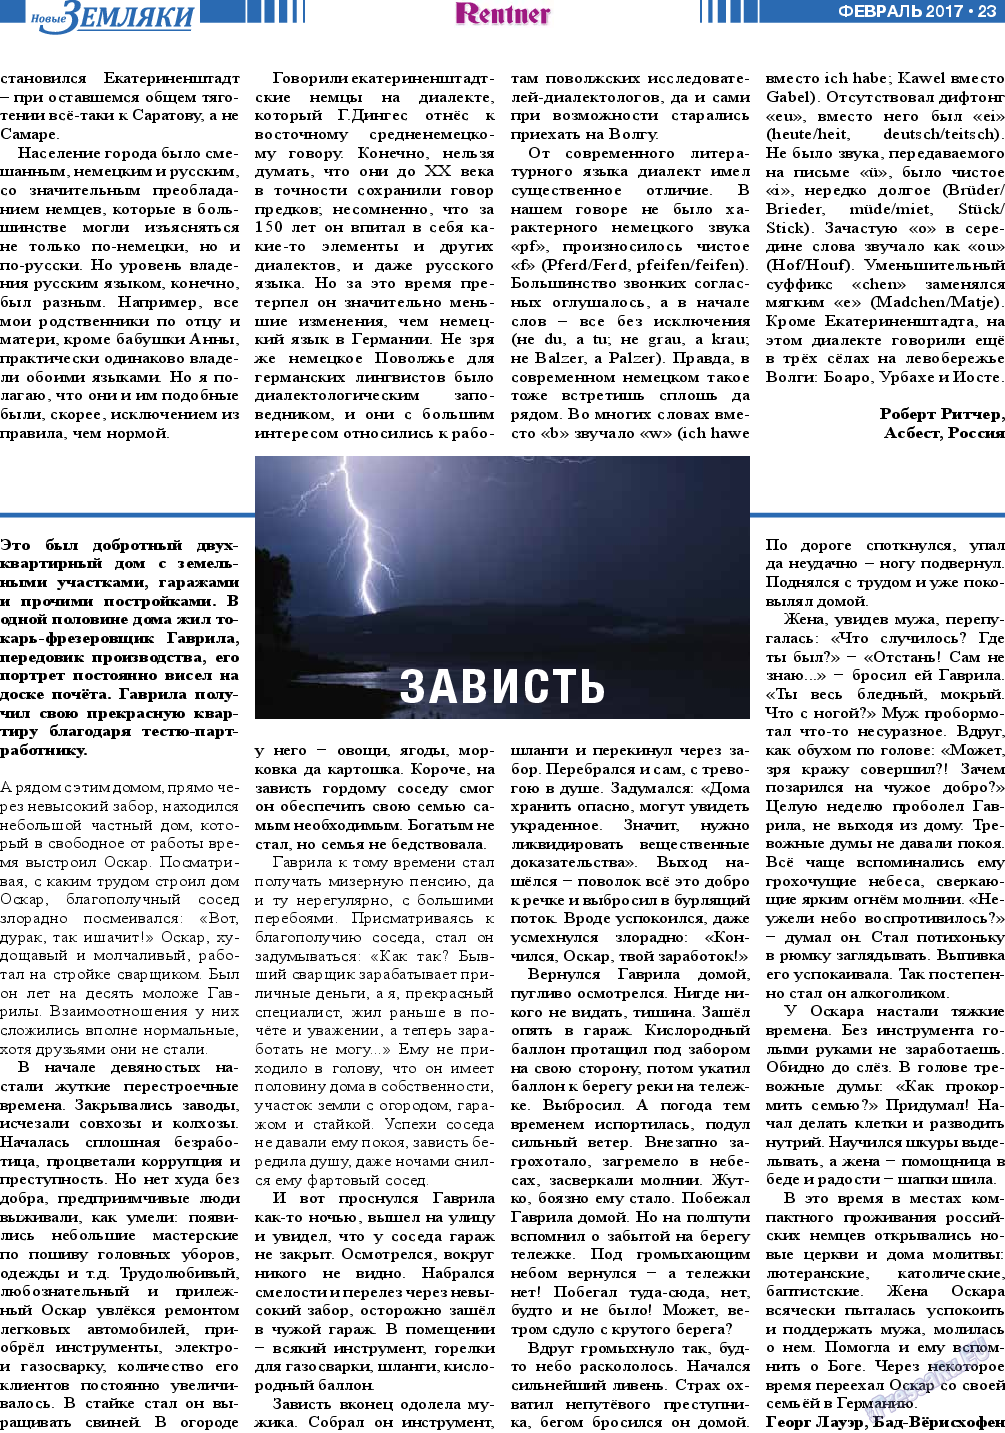 Новые Земляки (газета). 2017 год, номер 2, стр. 23